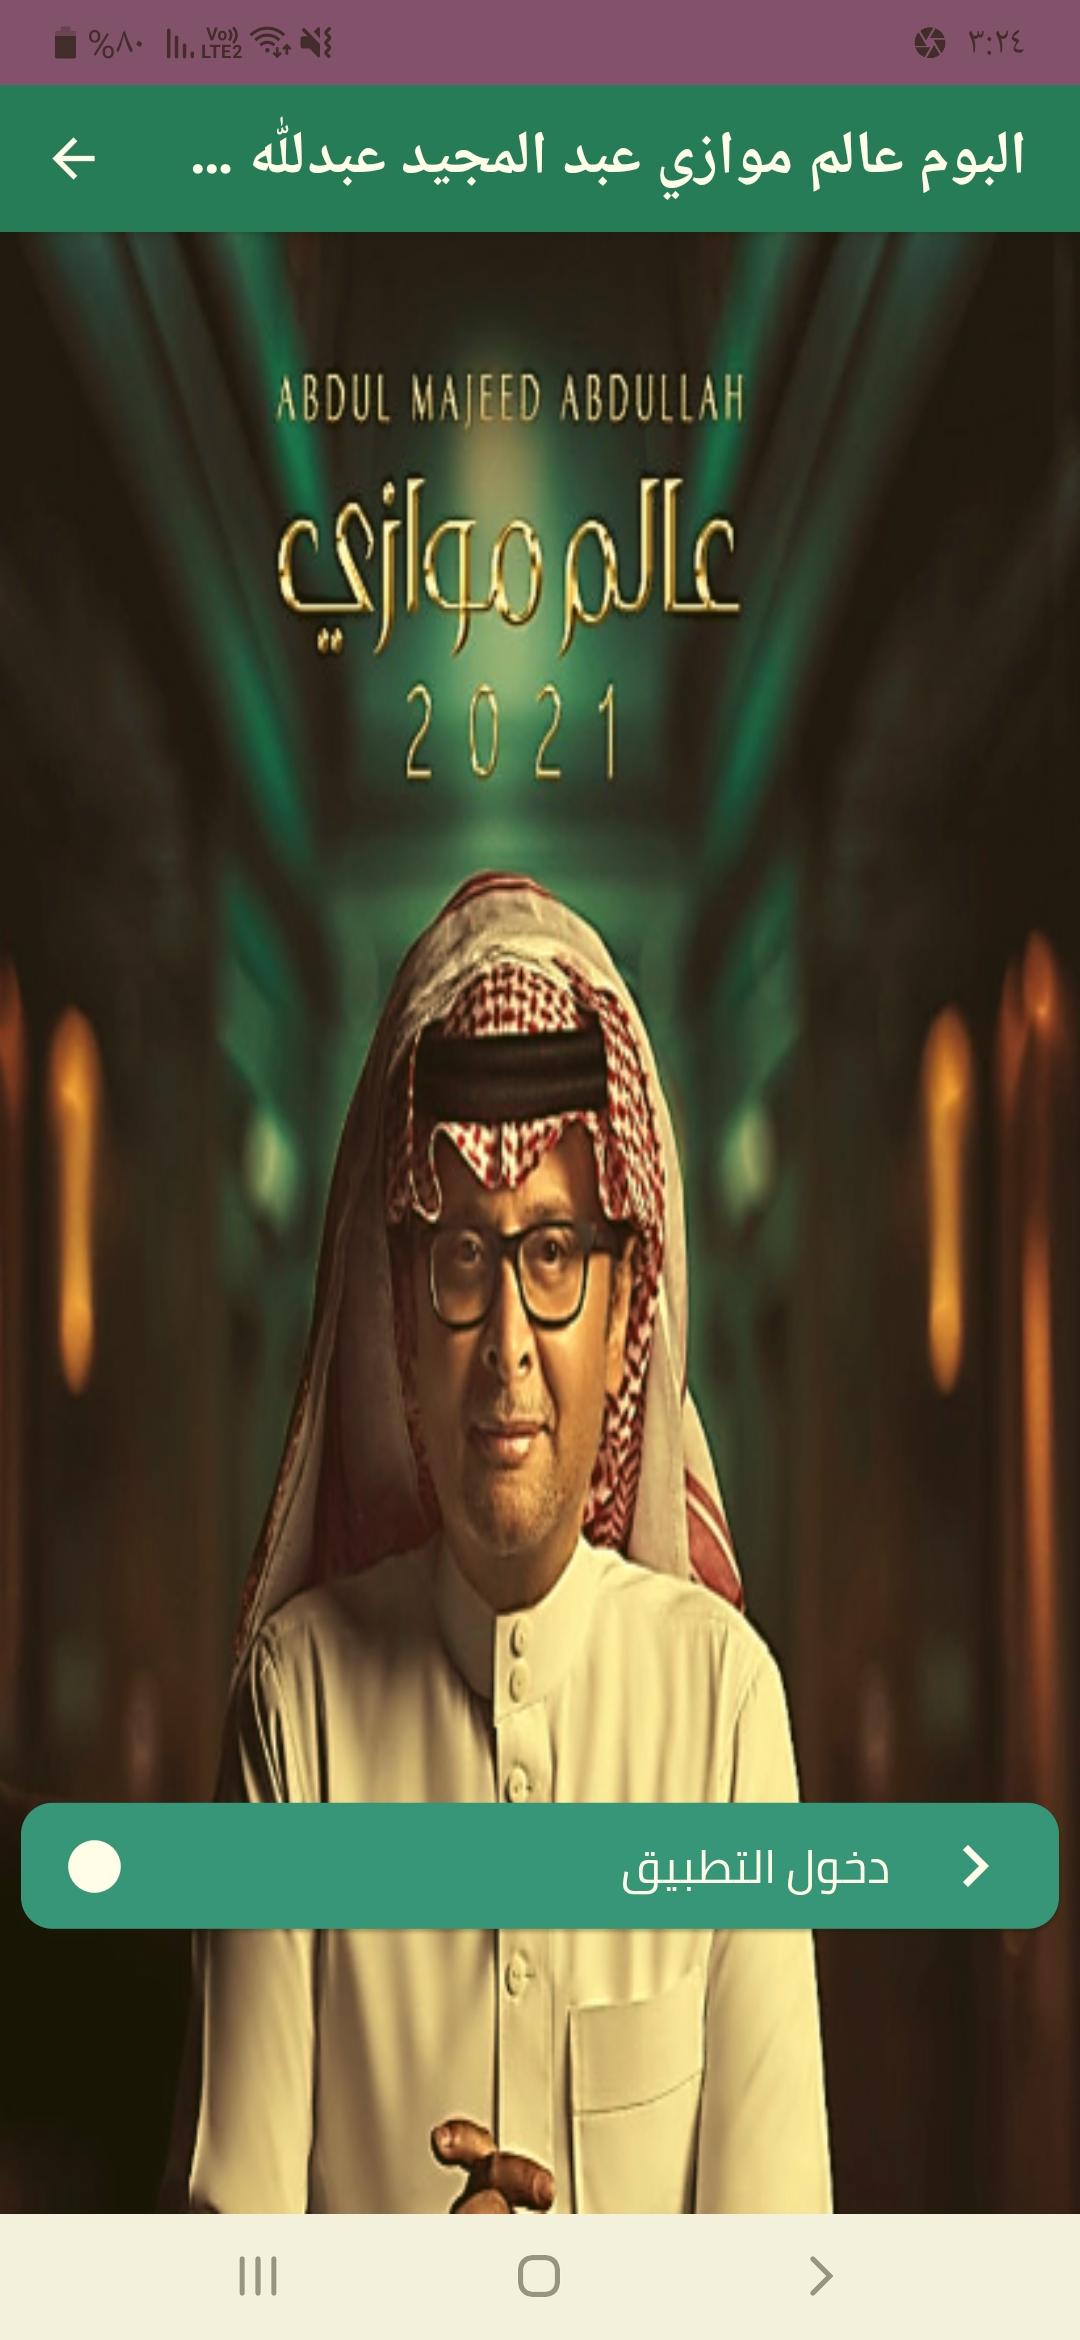 2021 عبدالله البوم عبدالمجيد عبدالمجيد عبدالله